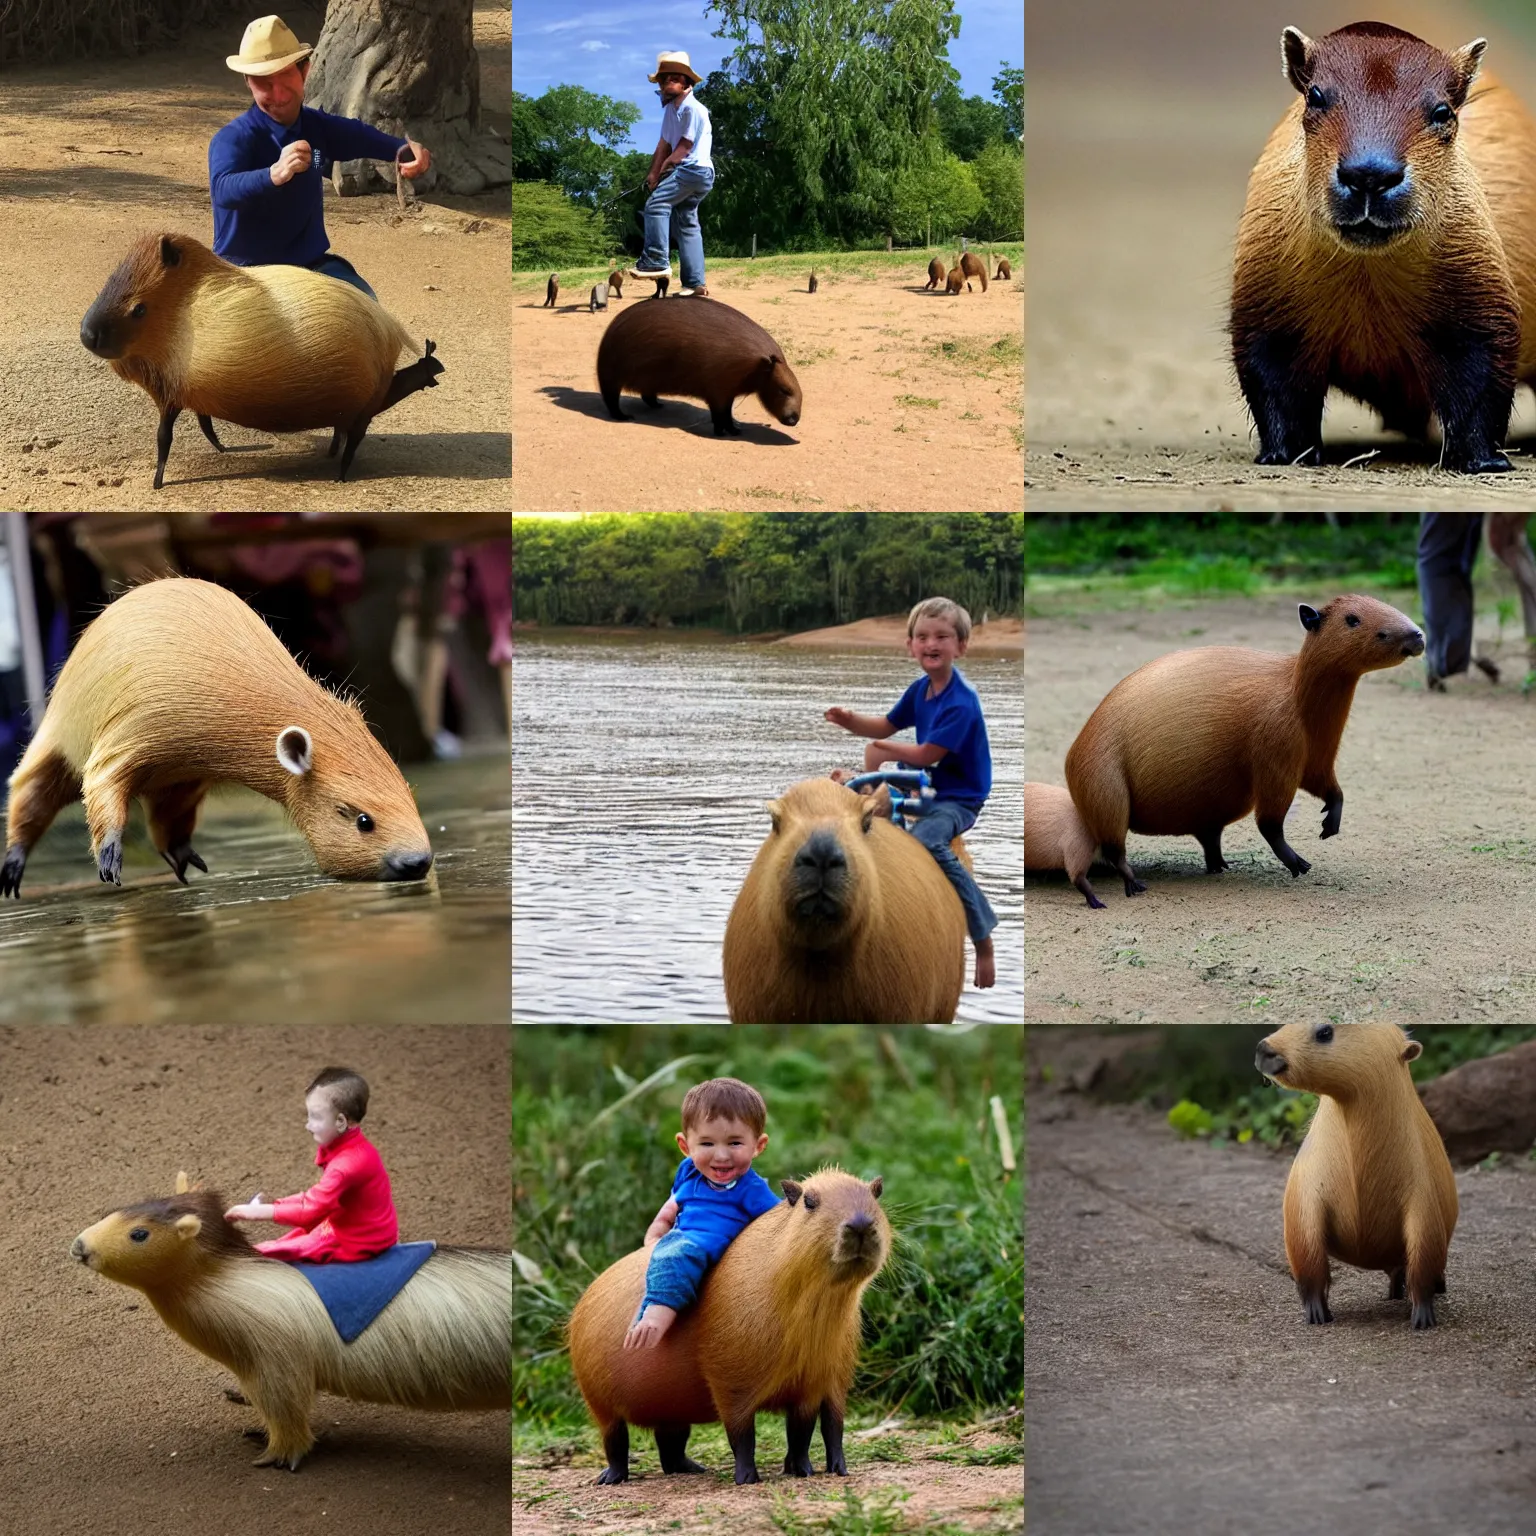 Prompt: Tiny man riding a capybara